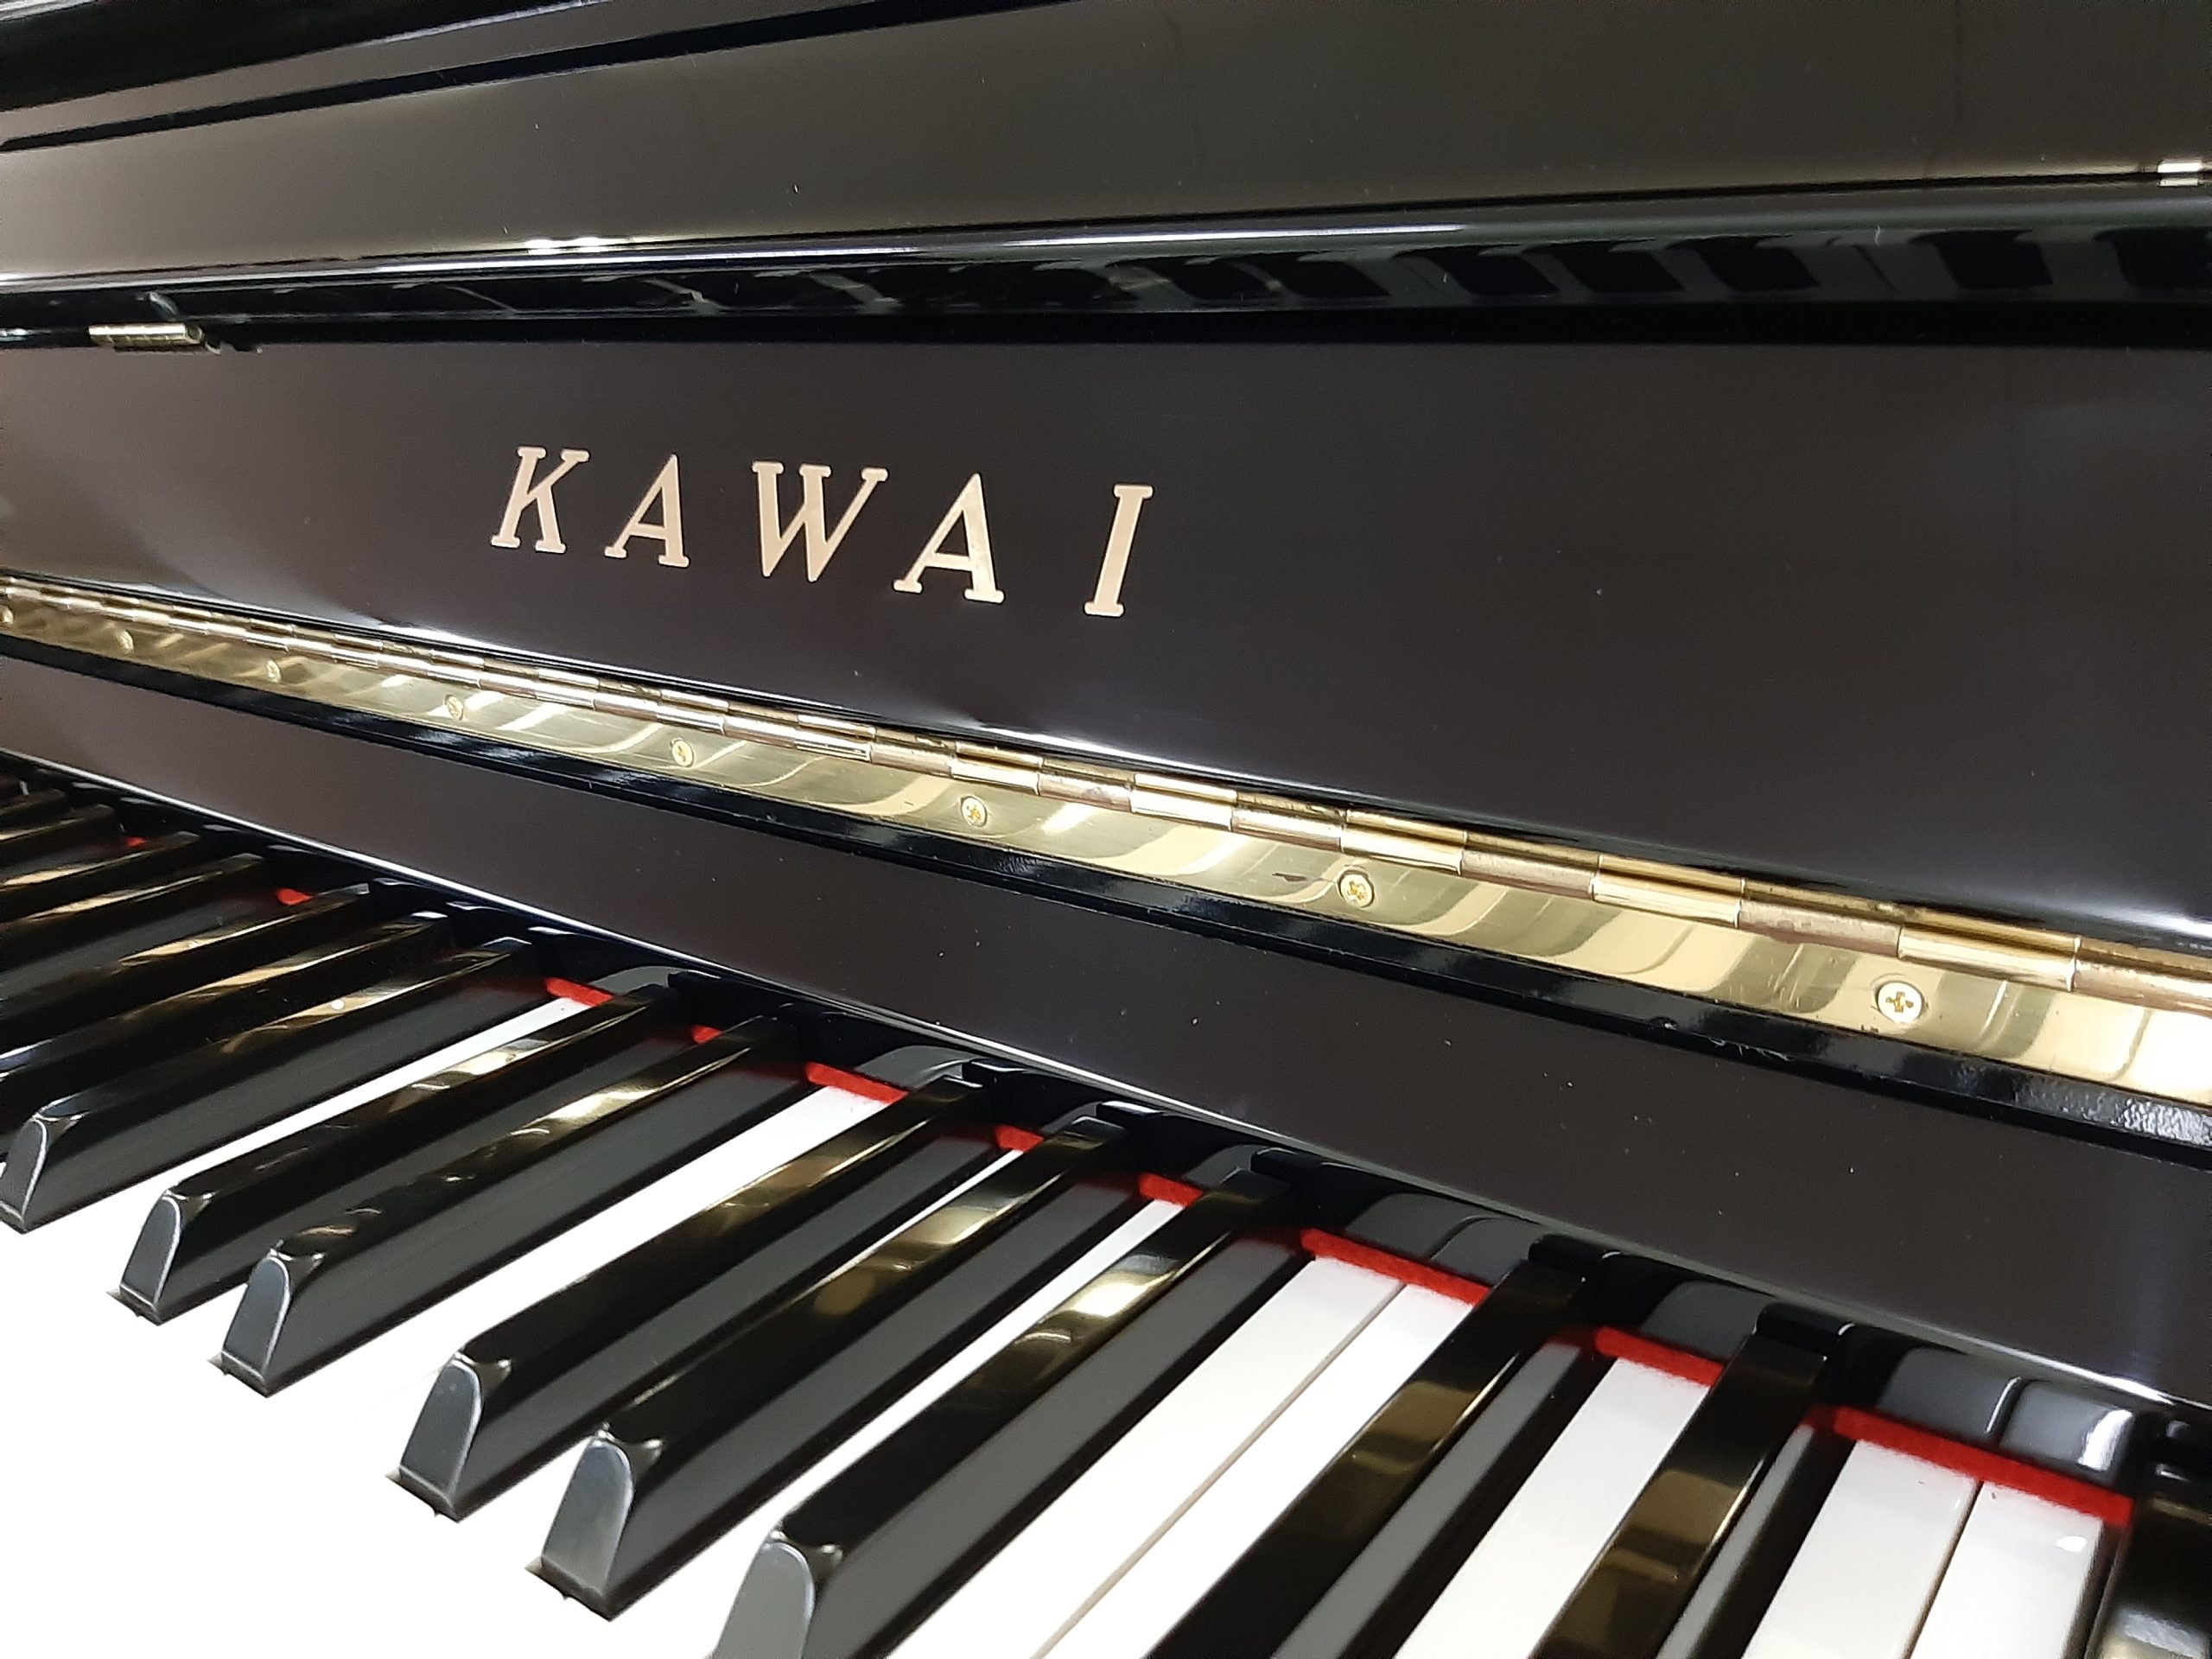 カワイ中古アップライトピアノ KAWAI NS-10